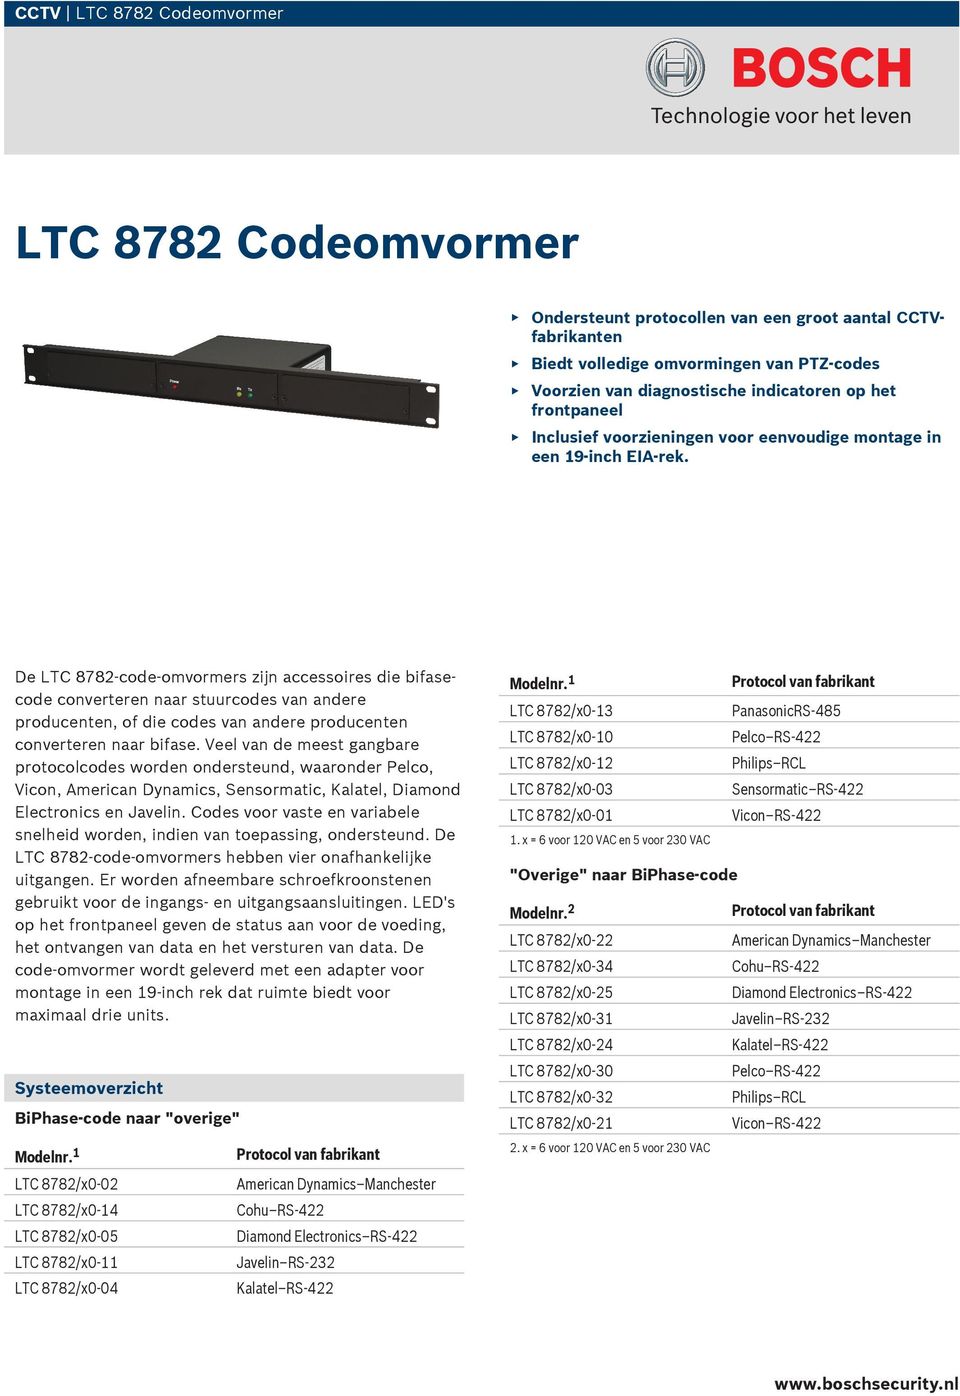 De LTC 8782-code-omvormers zijn accessoires die bifasecode converteren naar stuurcodes van andere producenten, of die codes van andere producenten converteren naar bifase.